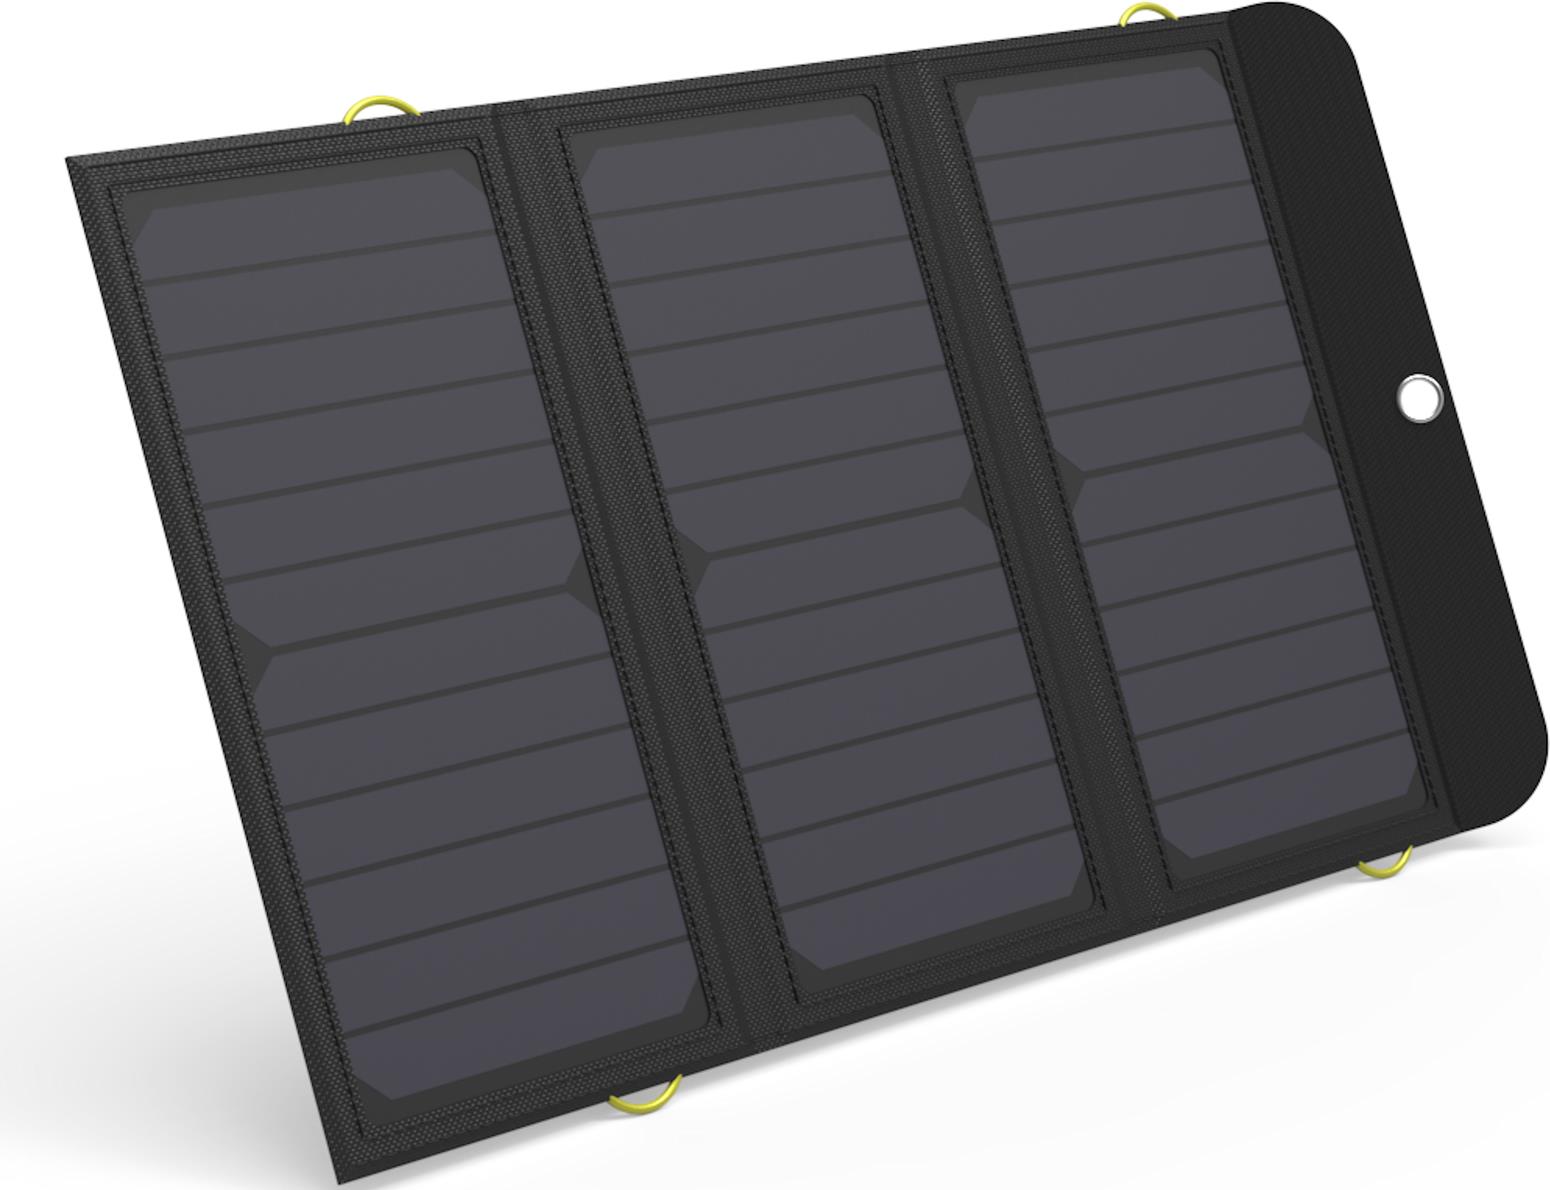 Sandberg Solar Charger 21W 2xUSB+USB-C (420-55)